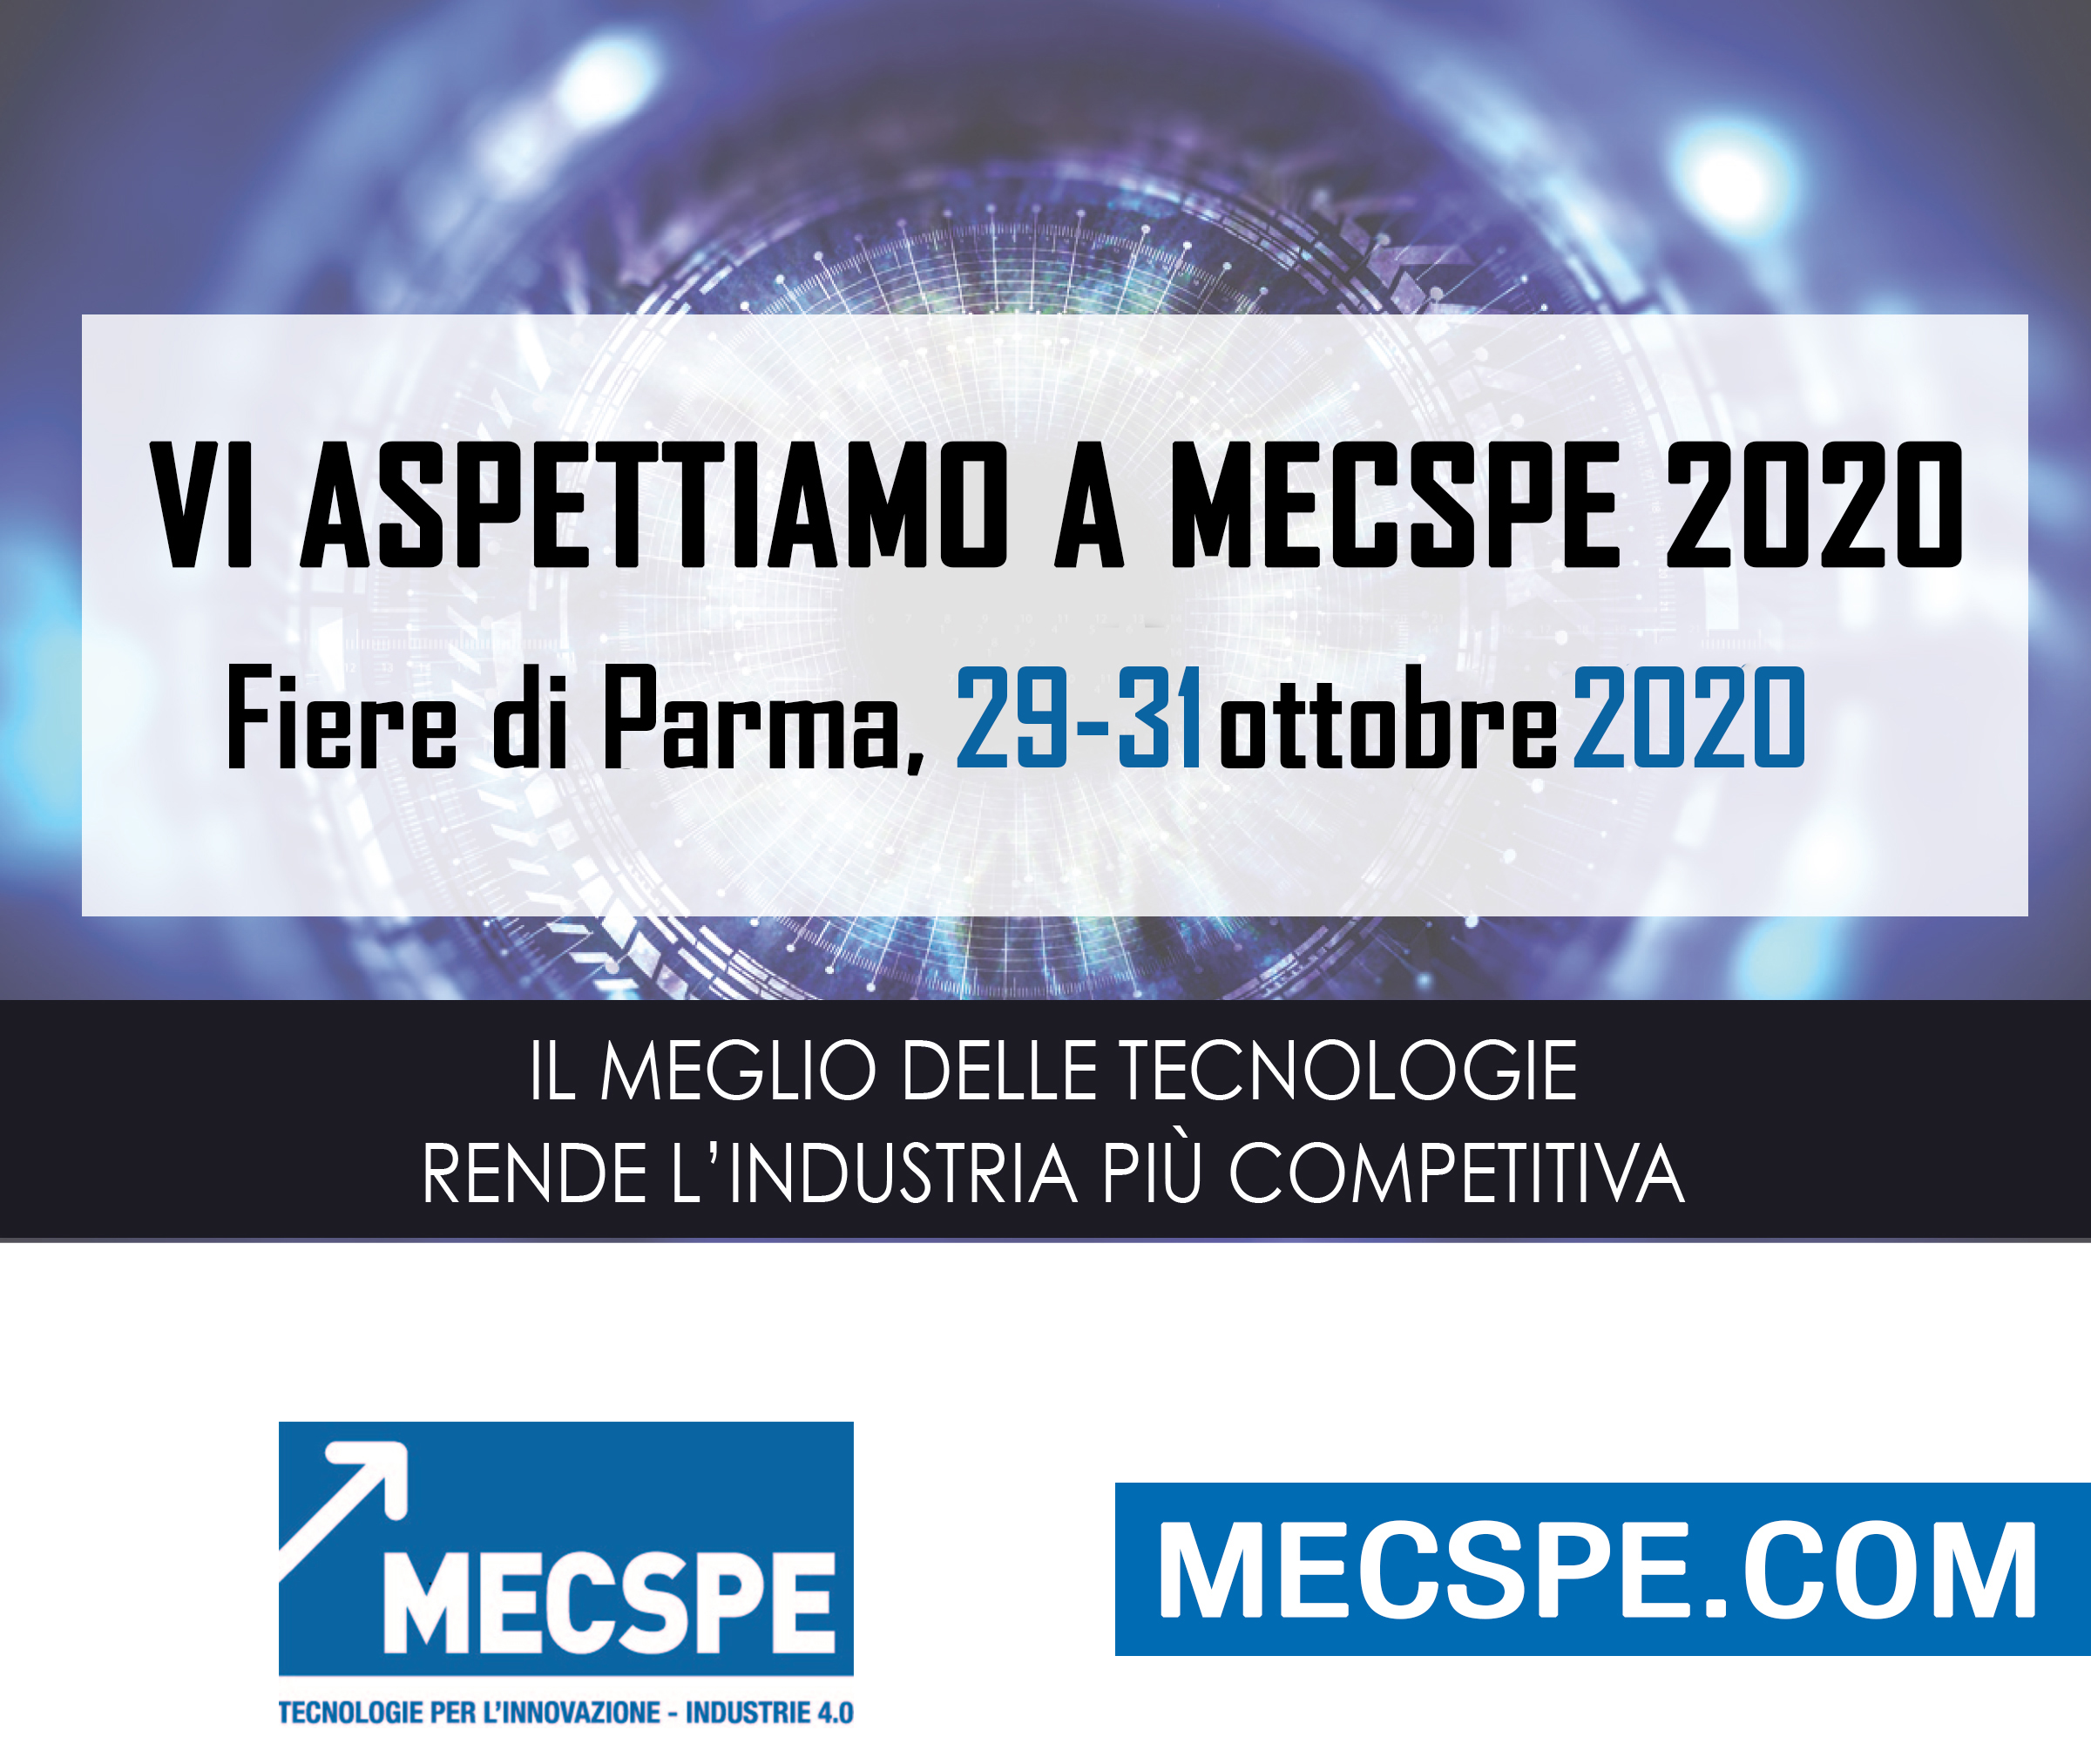 MECSPE PARMA OTTOBRE 2020